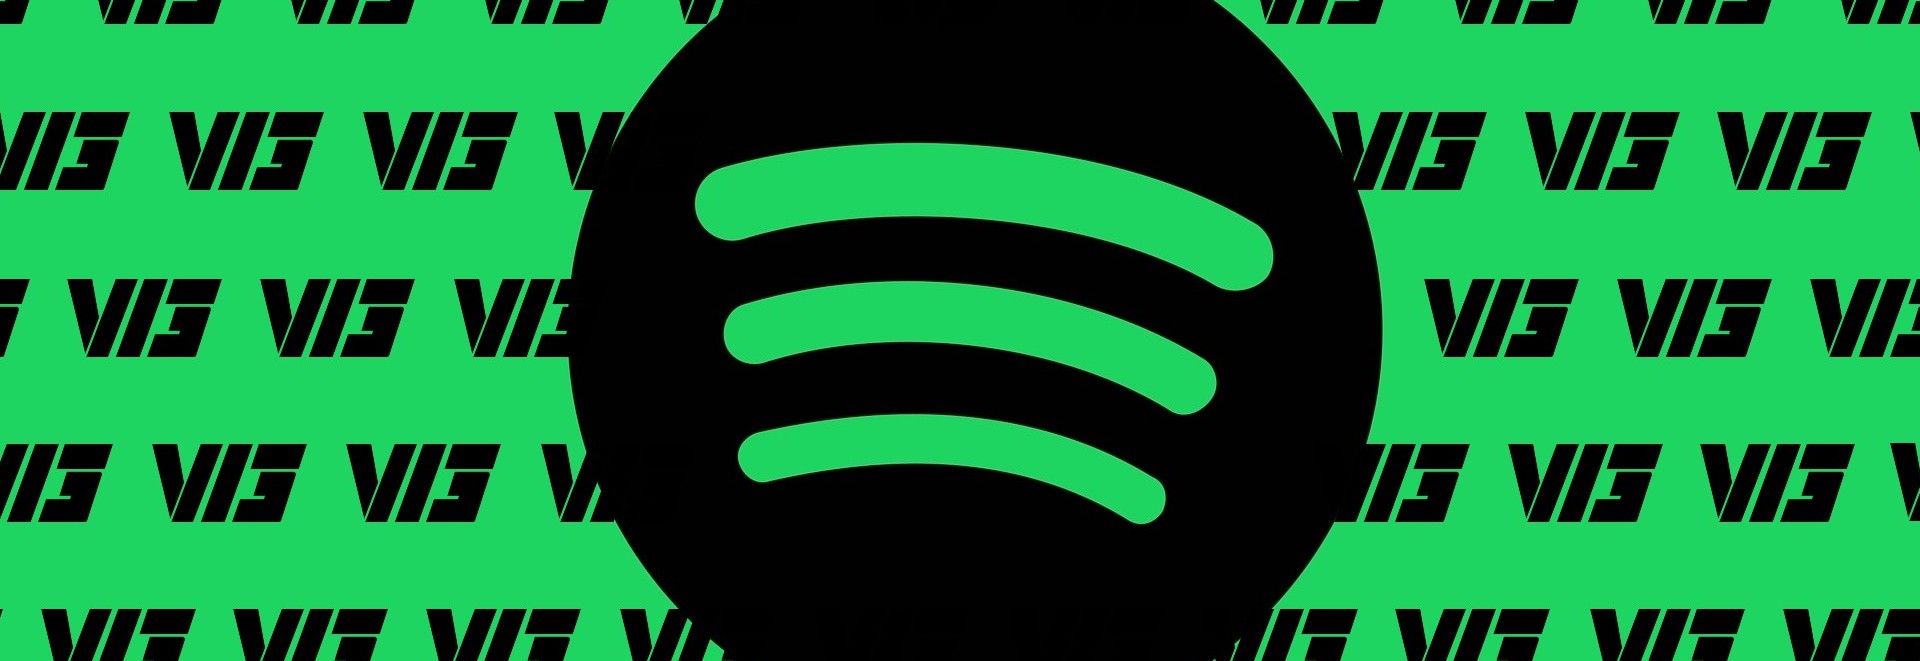 Cleiton rasta Radio - playlist by Spotify